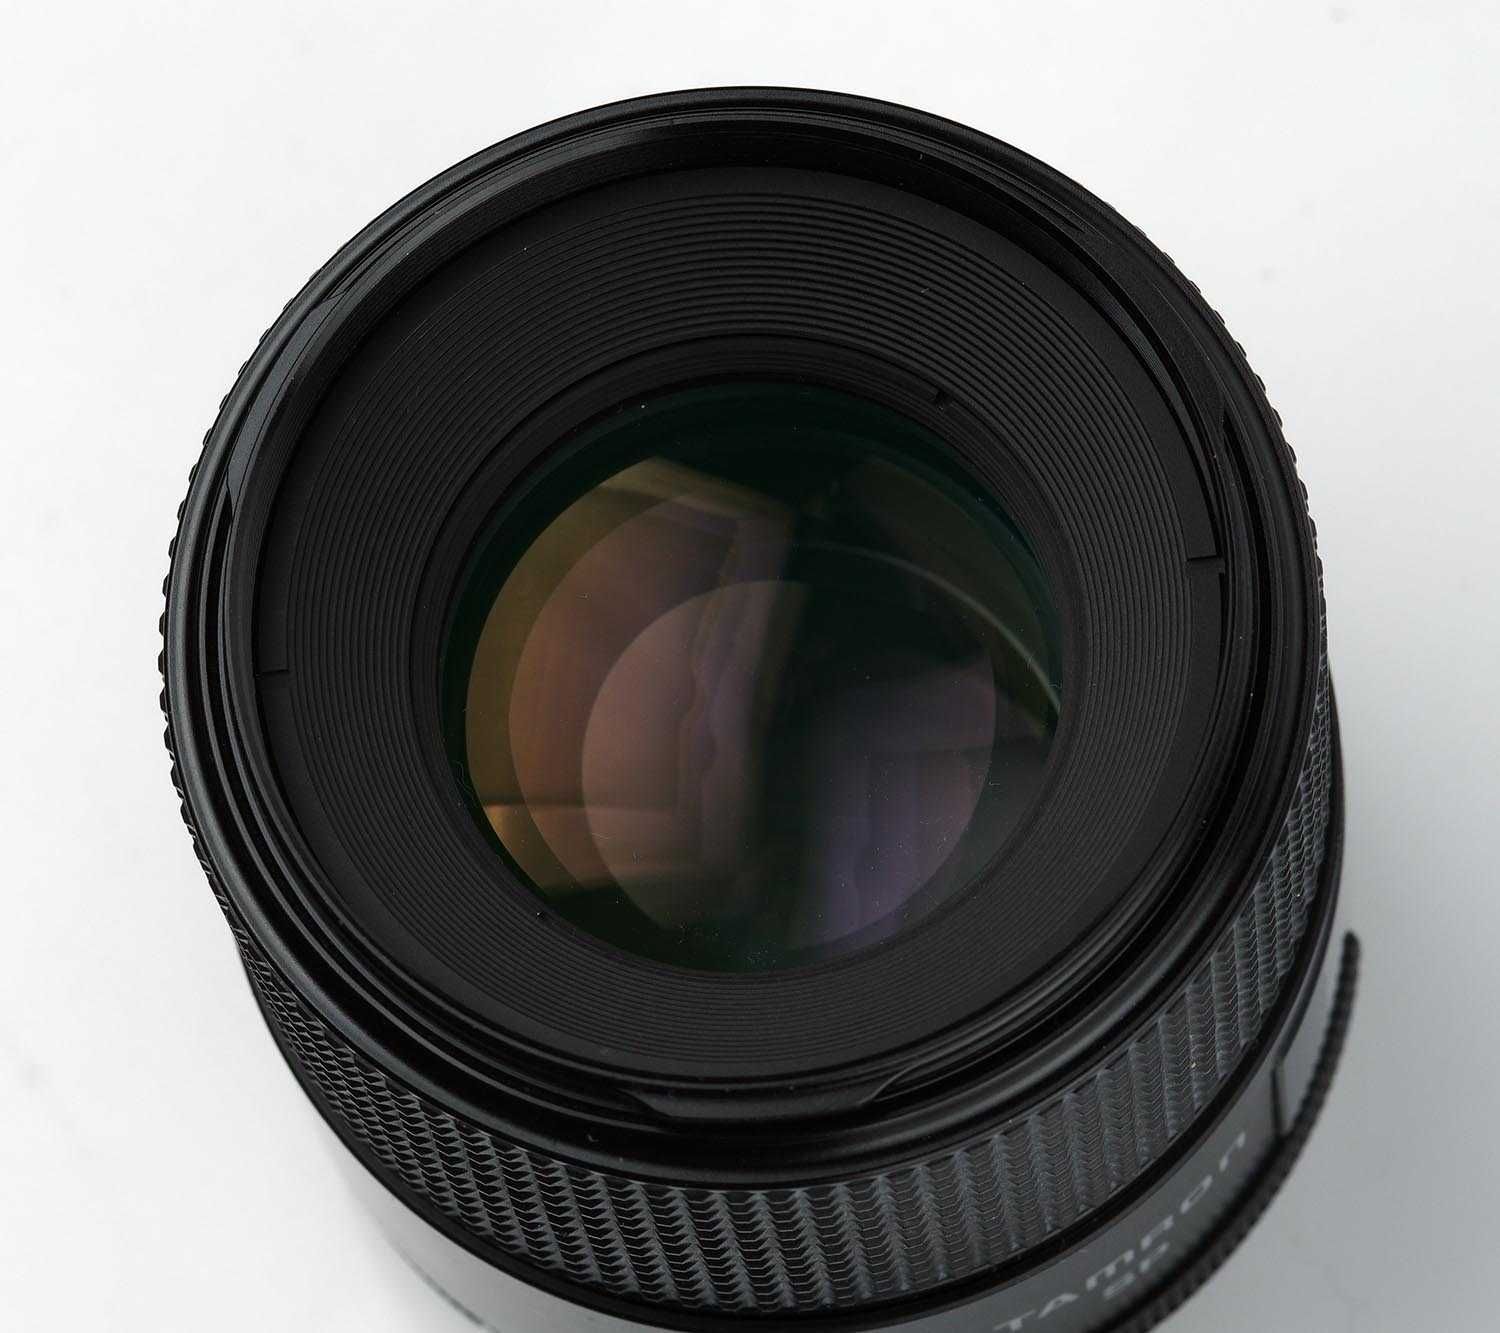 Tamron 90/2,5 macro Adaptall світлосильний макро/портретник FD Nikon F